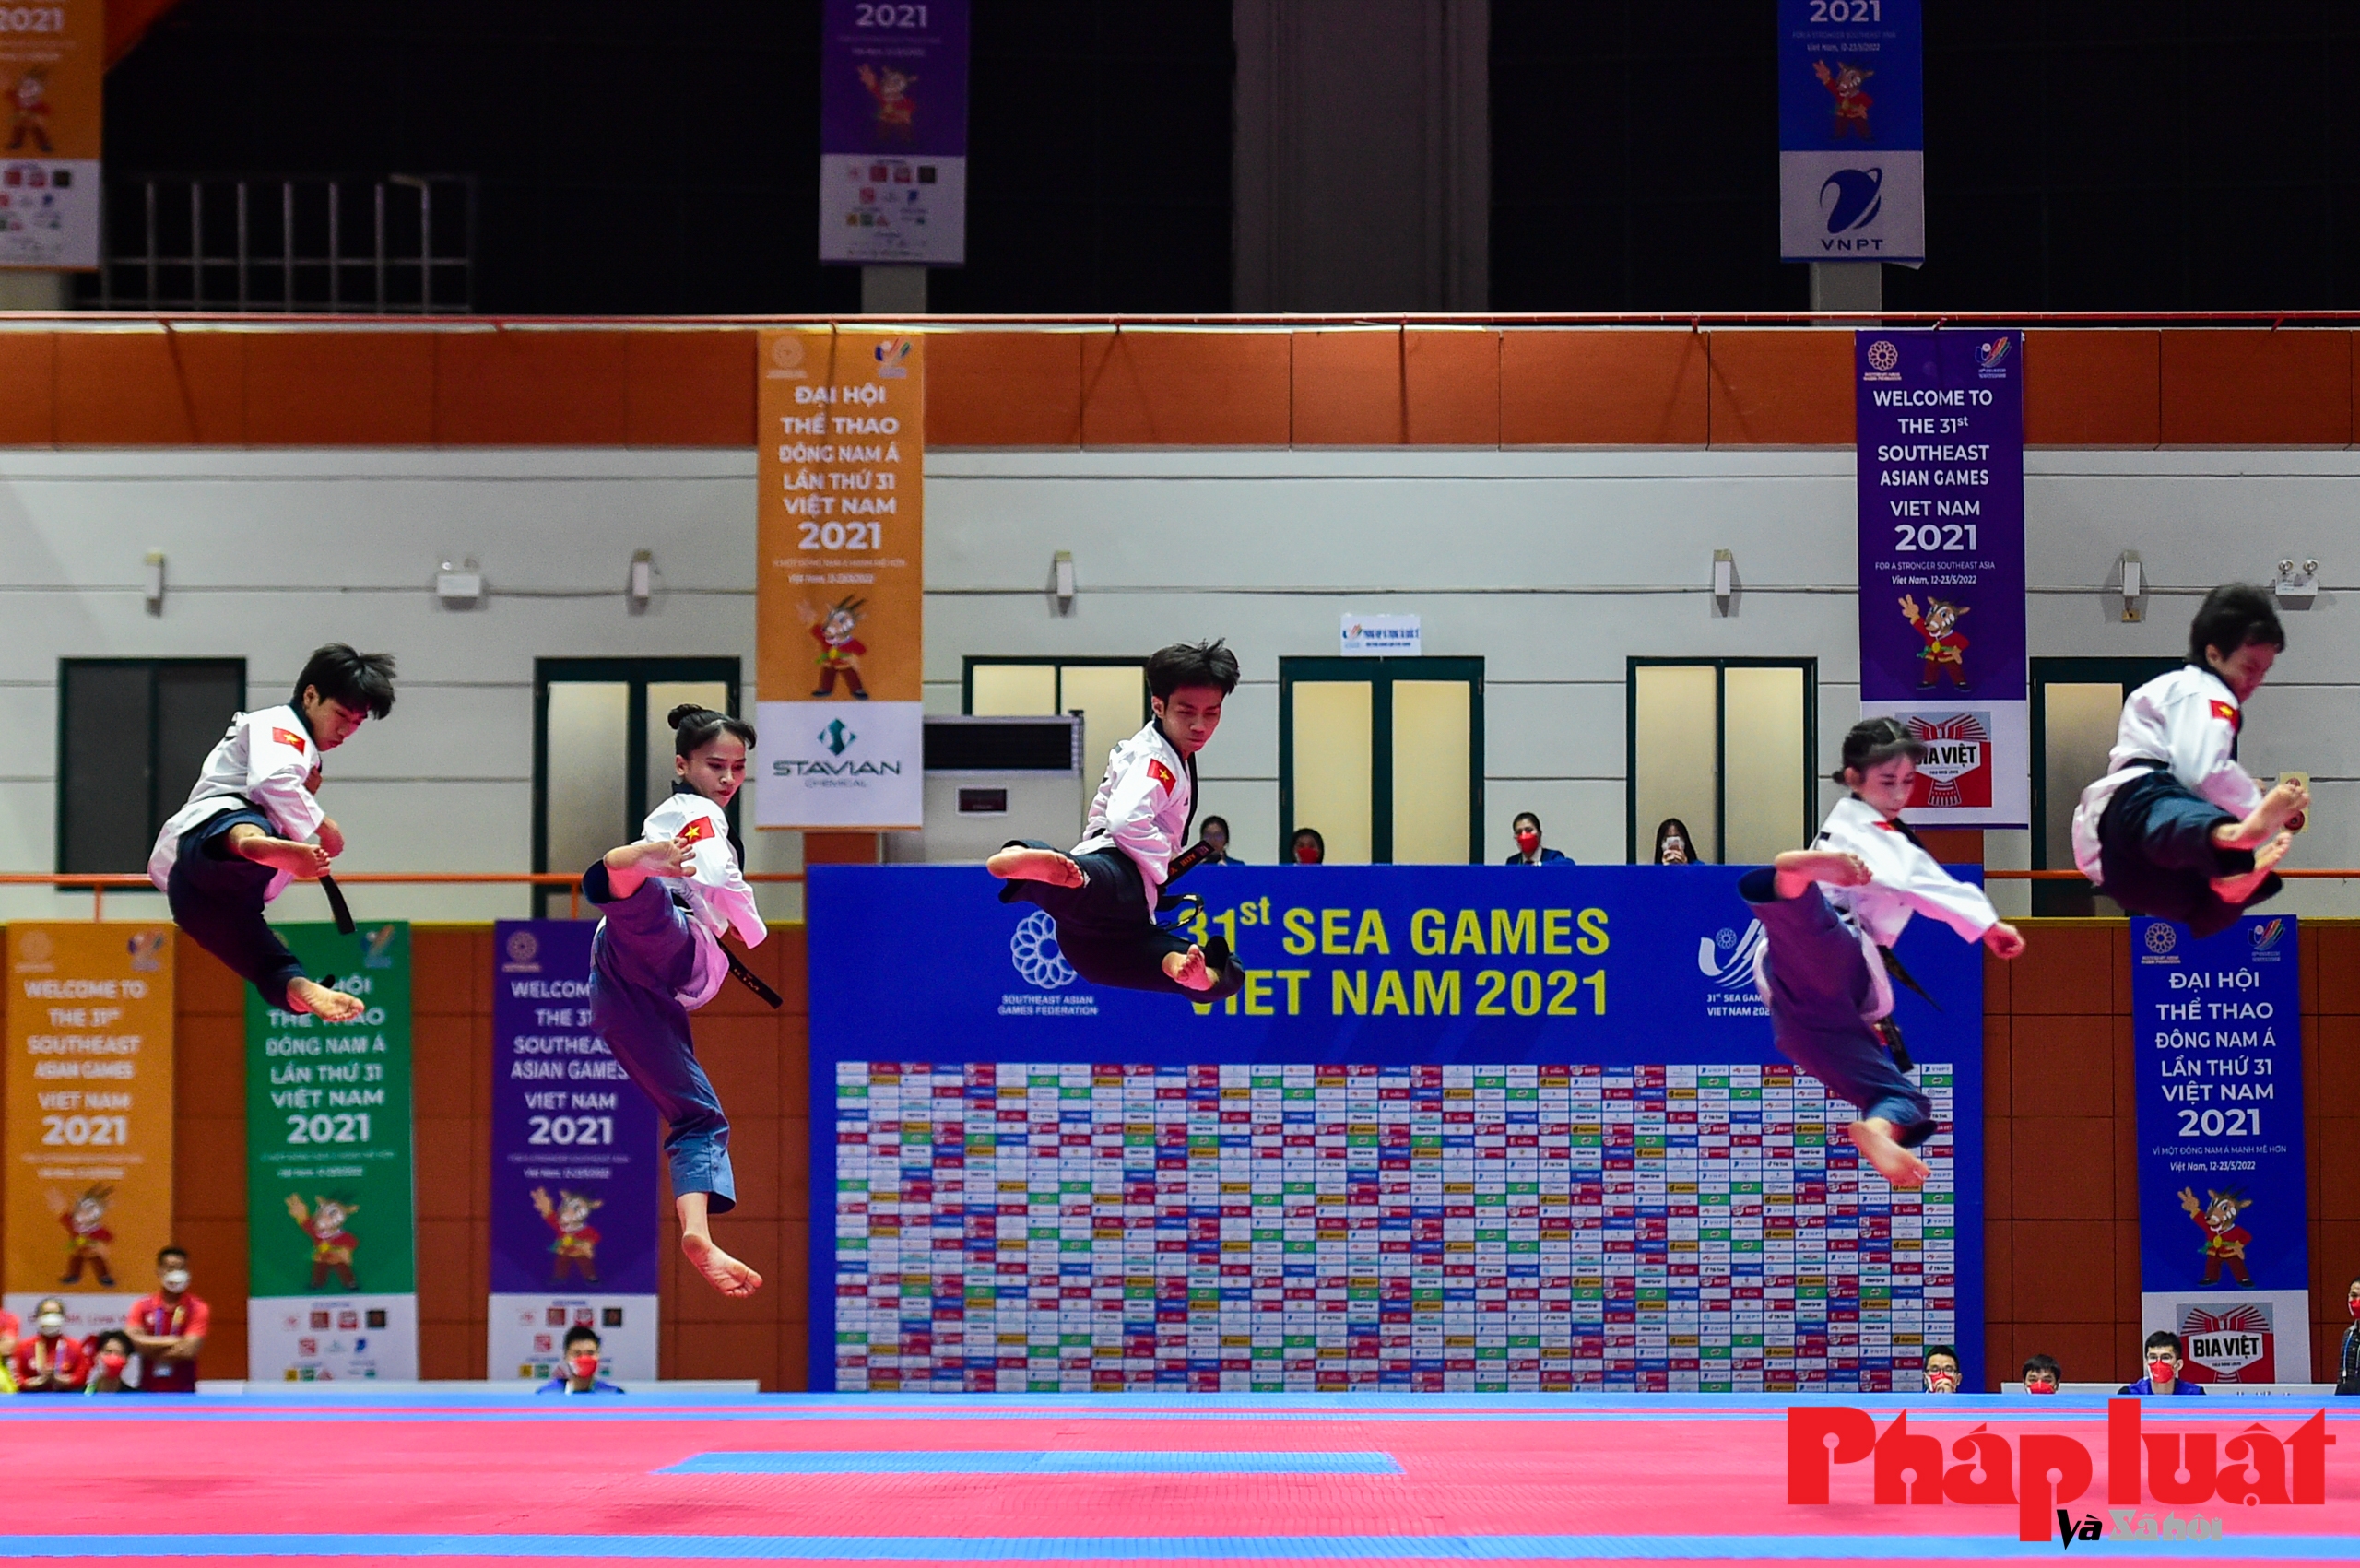 Võ sĩ Hà Nội cùng đồng đội “ẵm” 4 Huy chương Vàng Taekwondo biểu diễn